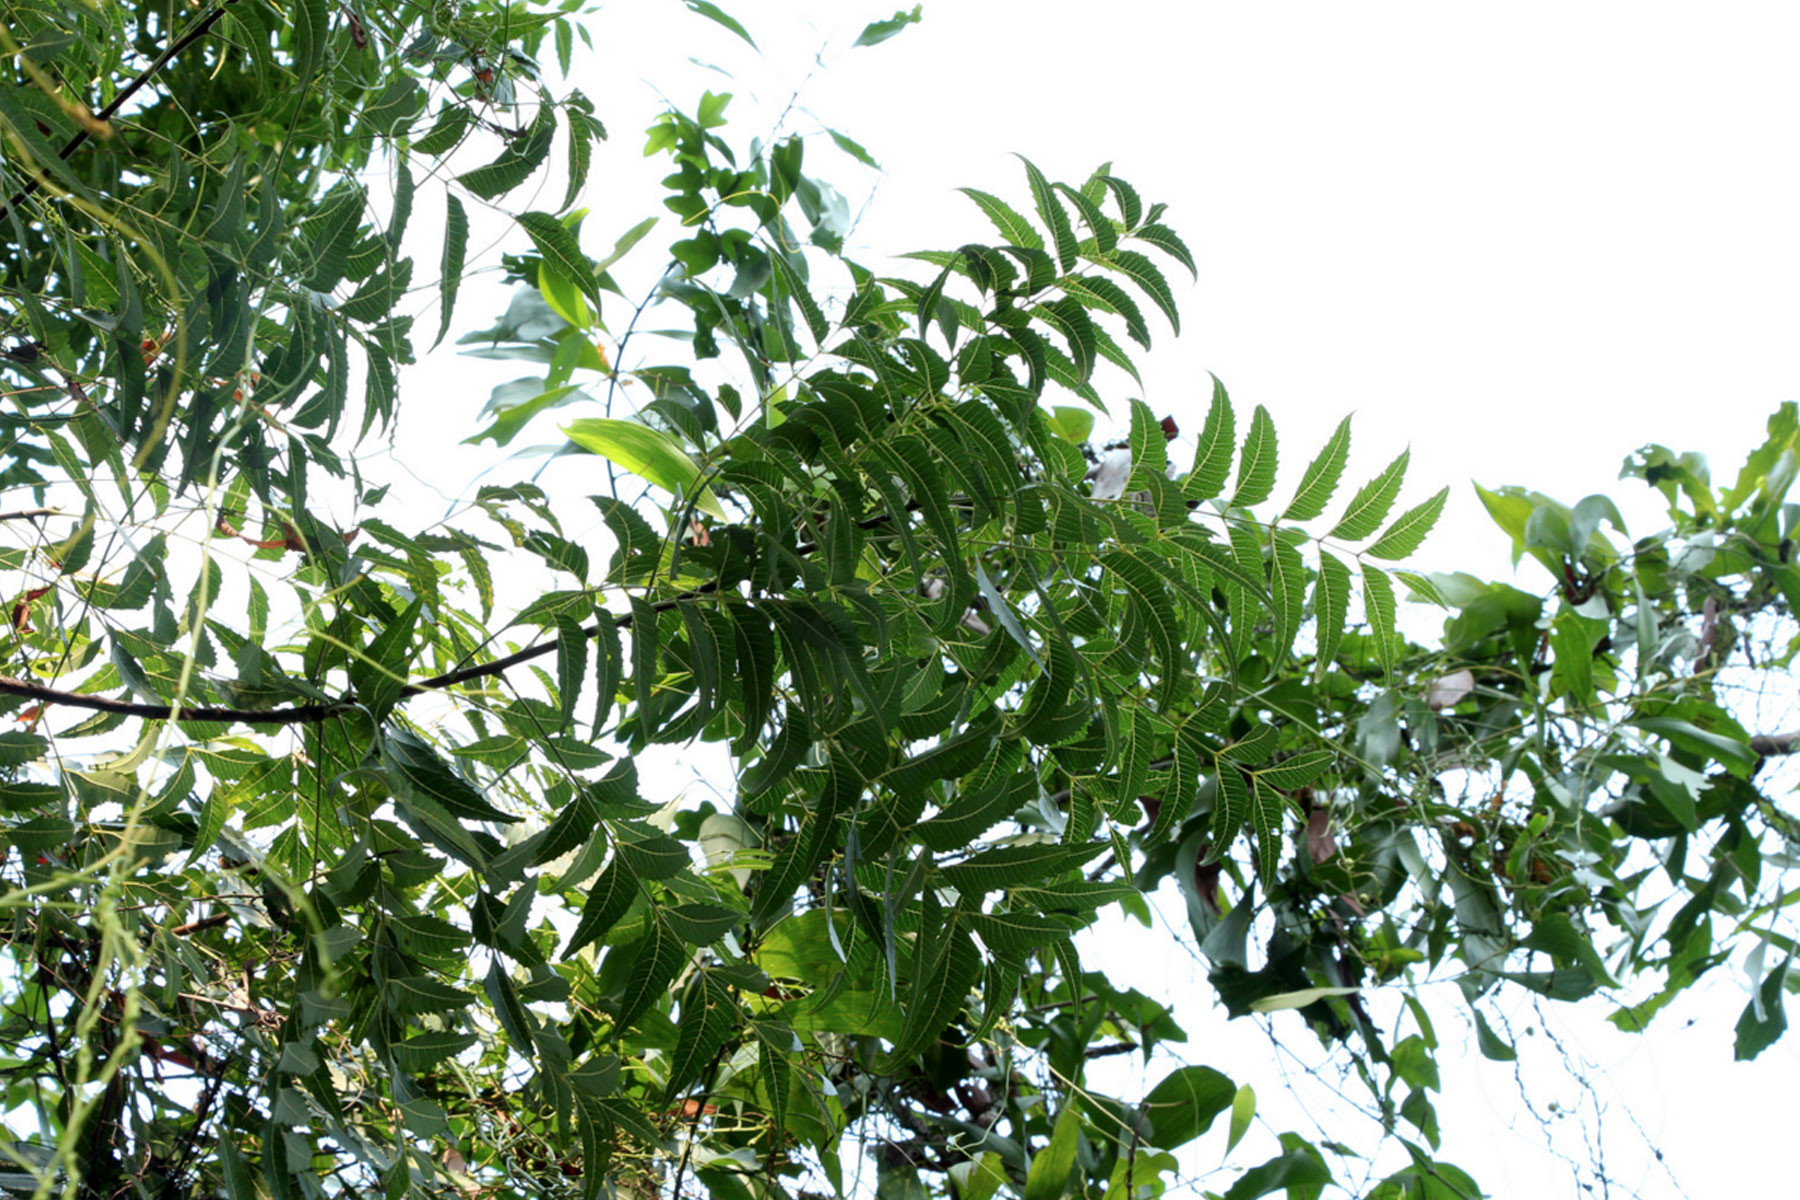 neem-l-arbre-ayurvedique-qui-guerit-tous-les-maux